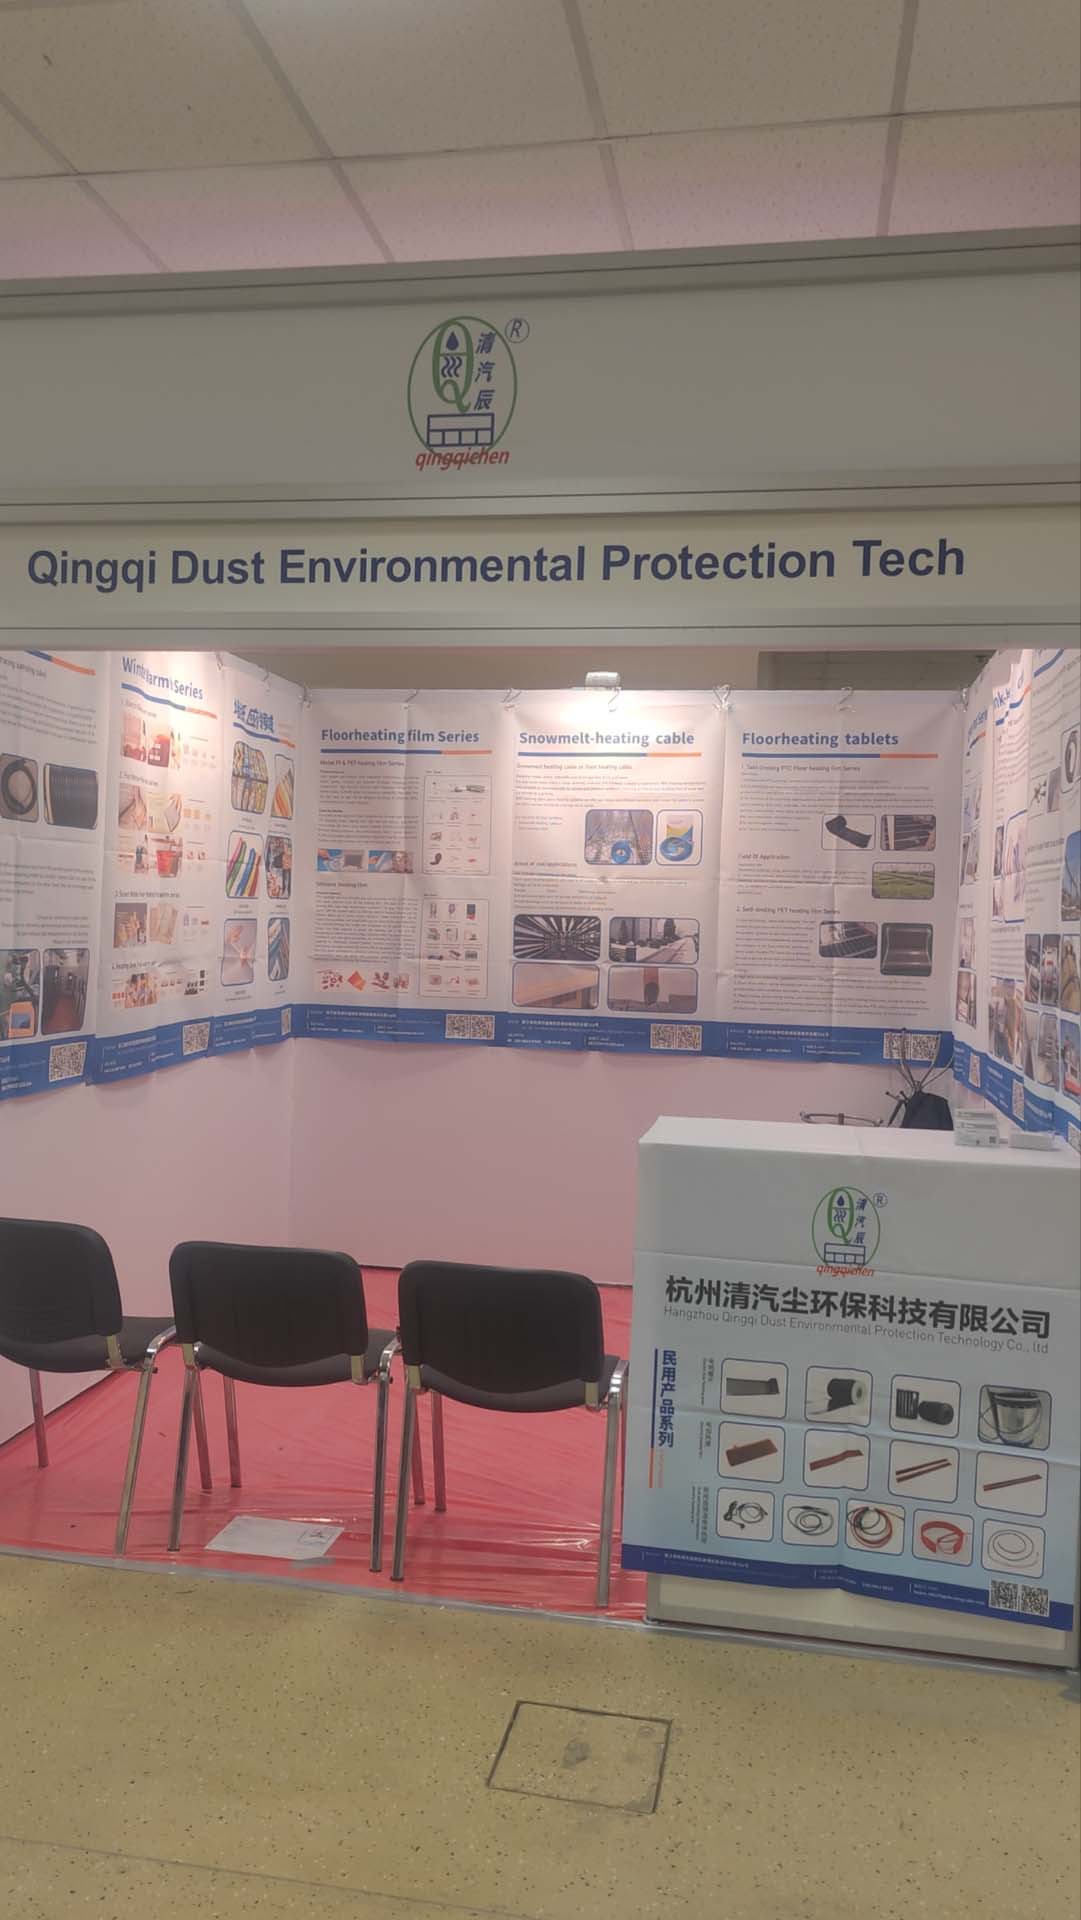  Hangzhou Qingqi Dust Environmental Protection Technology Co., Ltd. 19.–21. martā CabeX izstādē Maskavā, Krievijā, laipni lūdzam krievu draugus izstādē, lai apmainītos un apspriestu norādījumus 